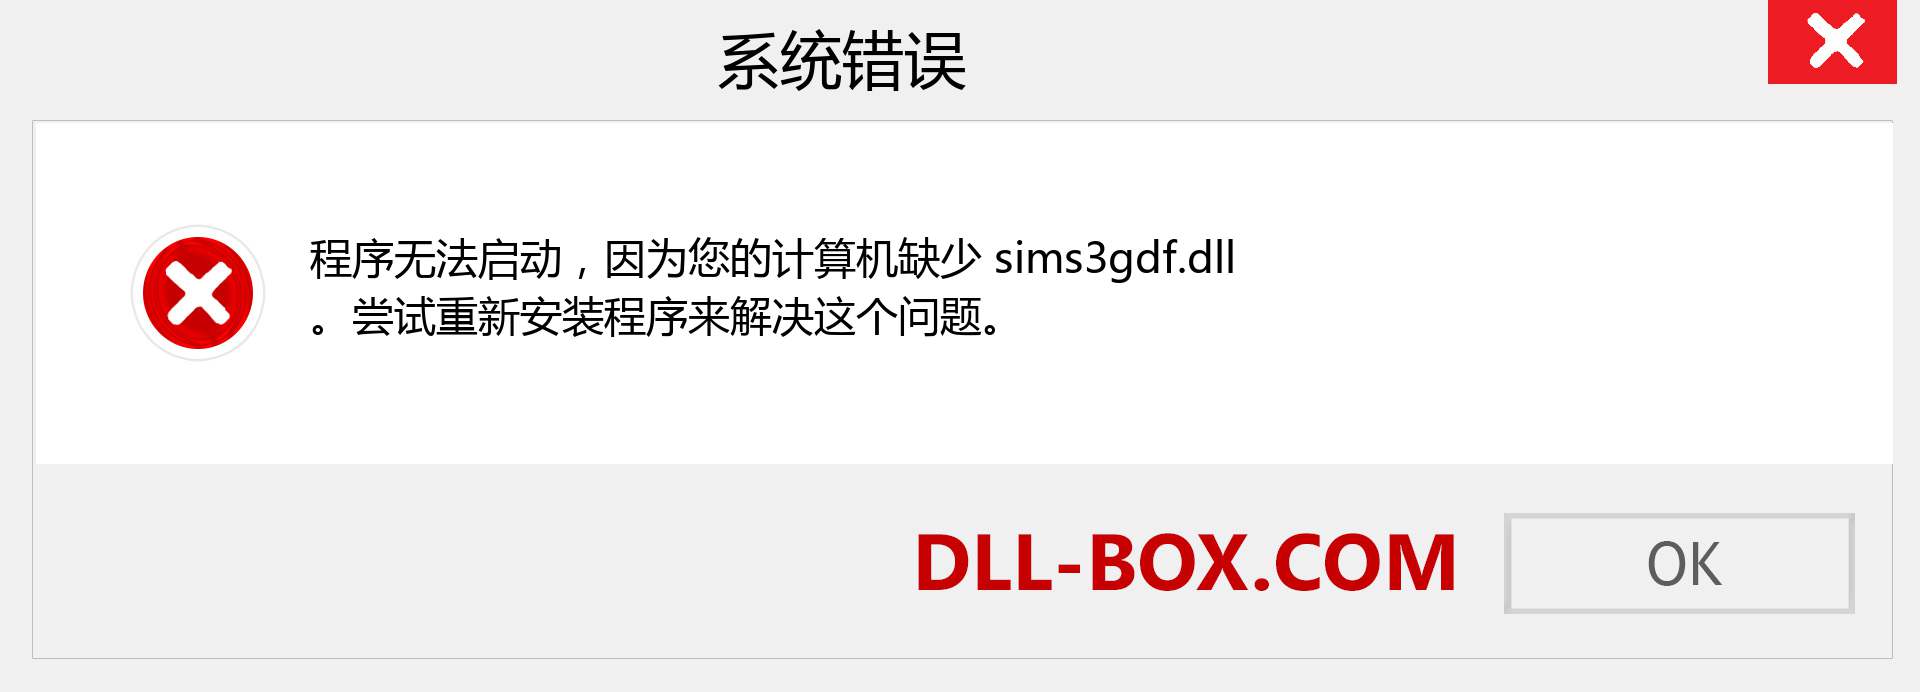 sims3gdf.dll 文件丢失？。 适用于 Windows 7、8、10 的下载 - 修复 Windows、照片、图像上的 sims3gdf dll 丢失错误